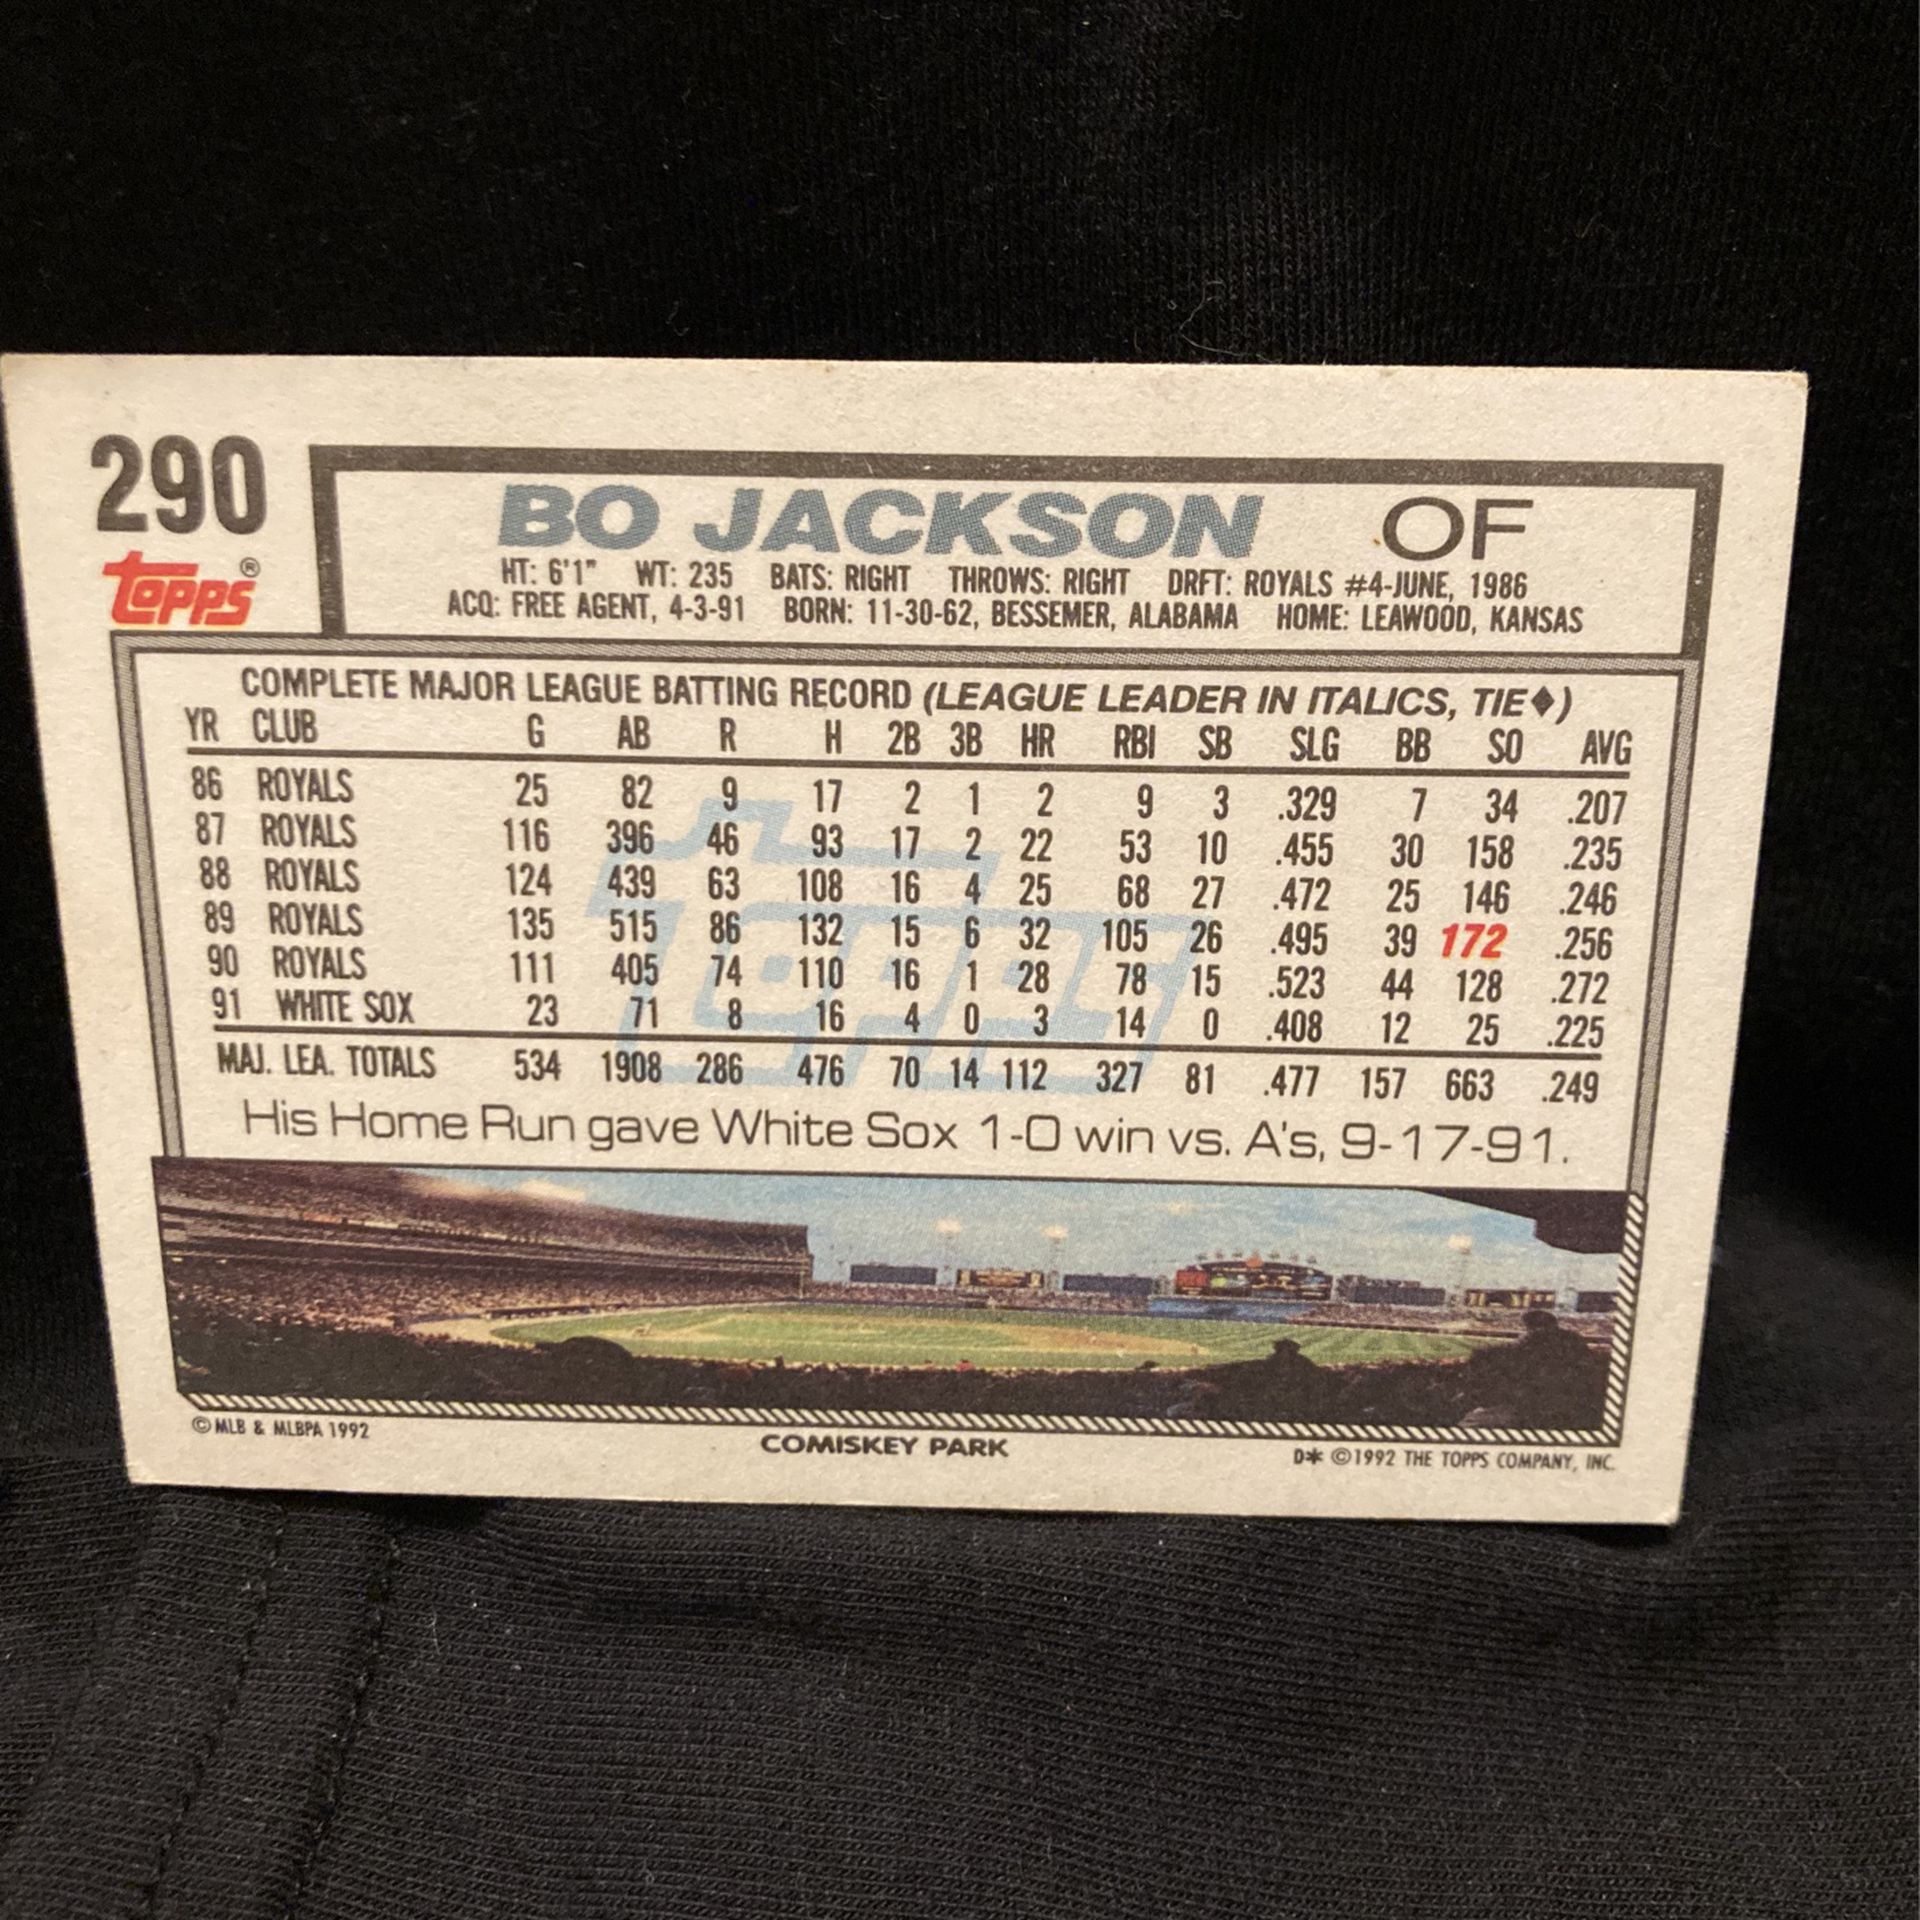 Bo Jackson Baseball Card